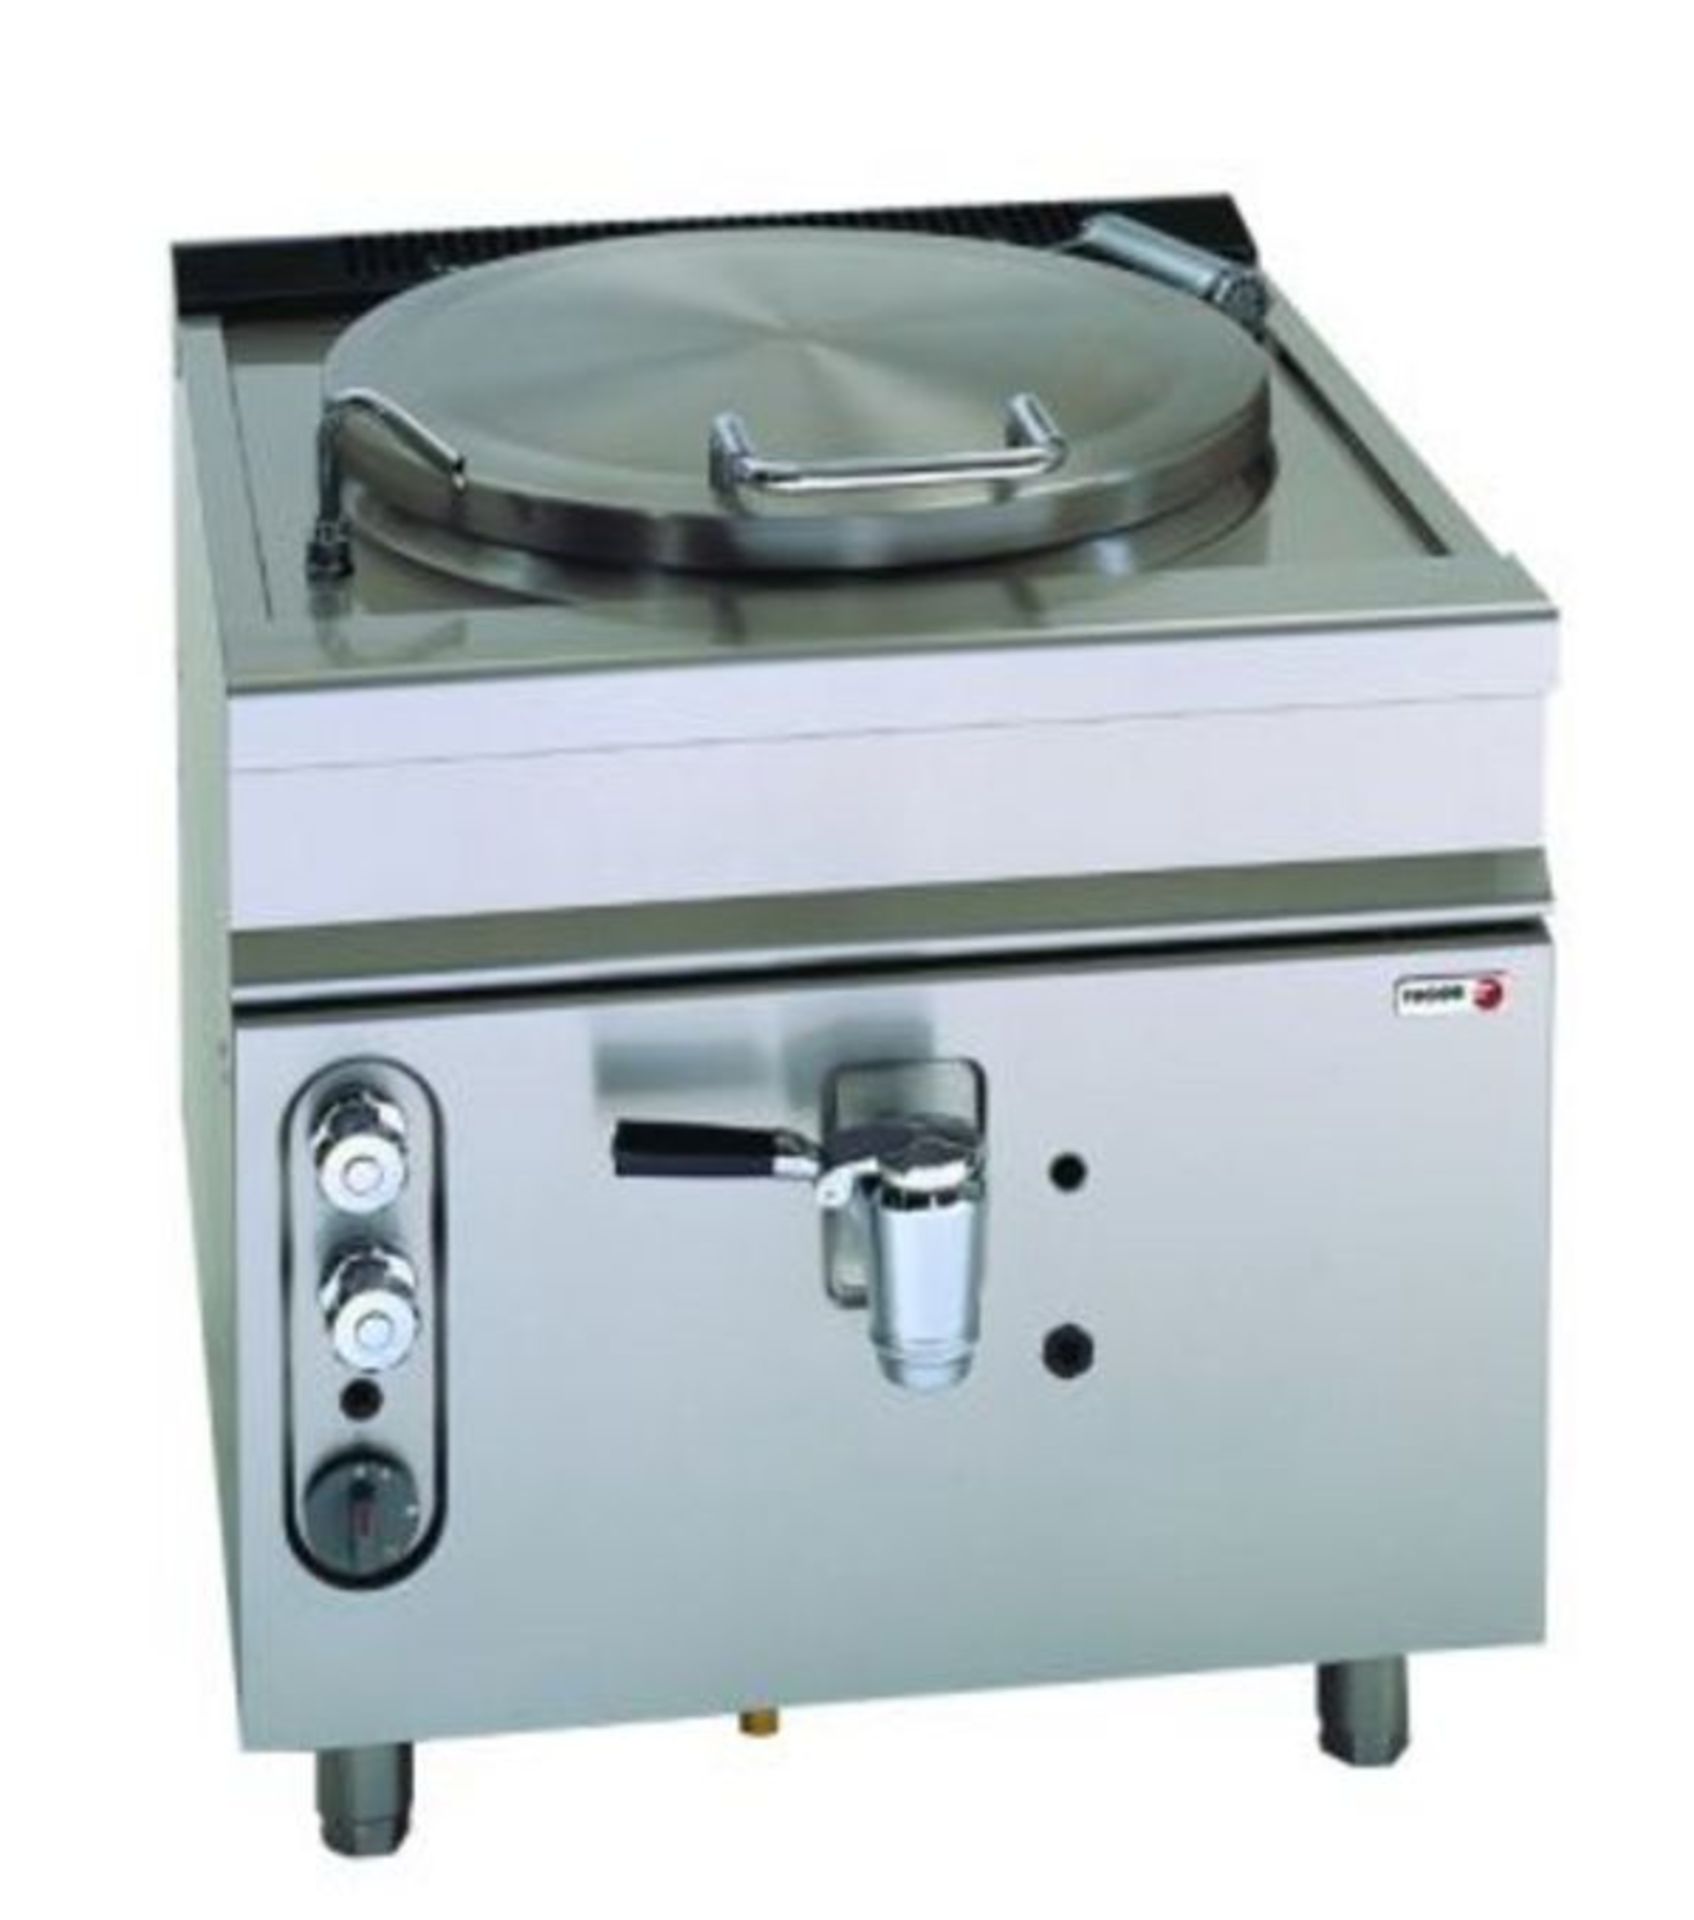 New fagor 100 Ltr Boiling pan. Model Mgp-10 NG. Nat Gas. Direct Heat Unit